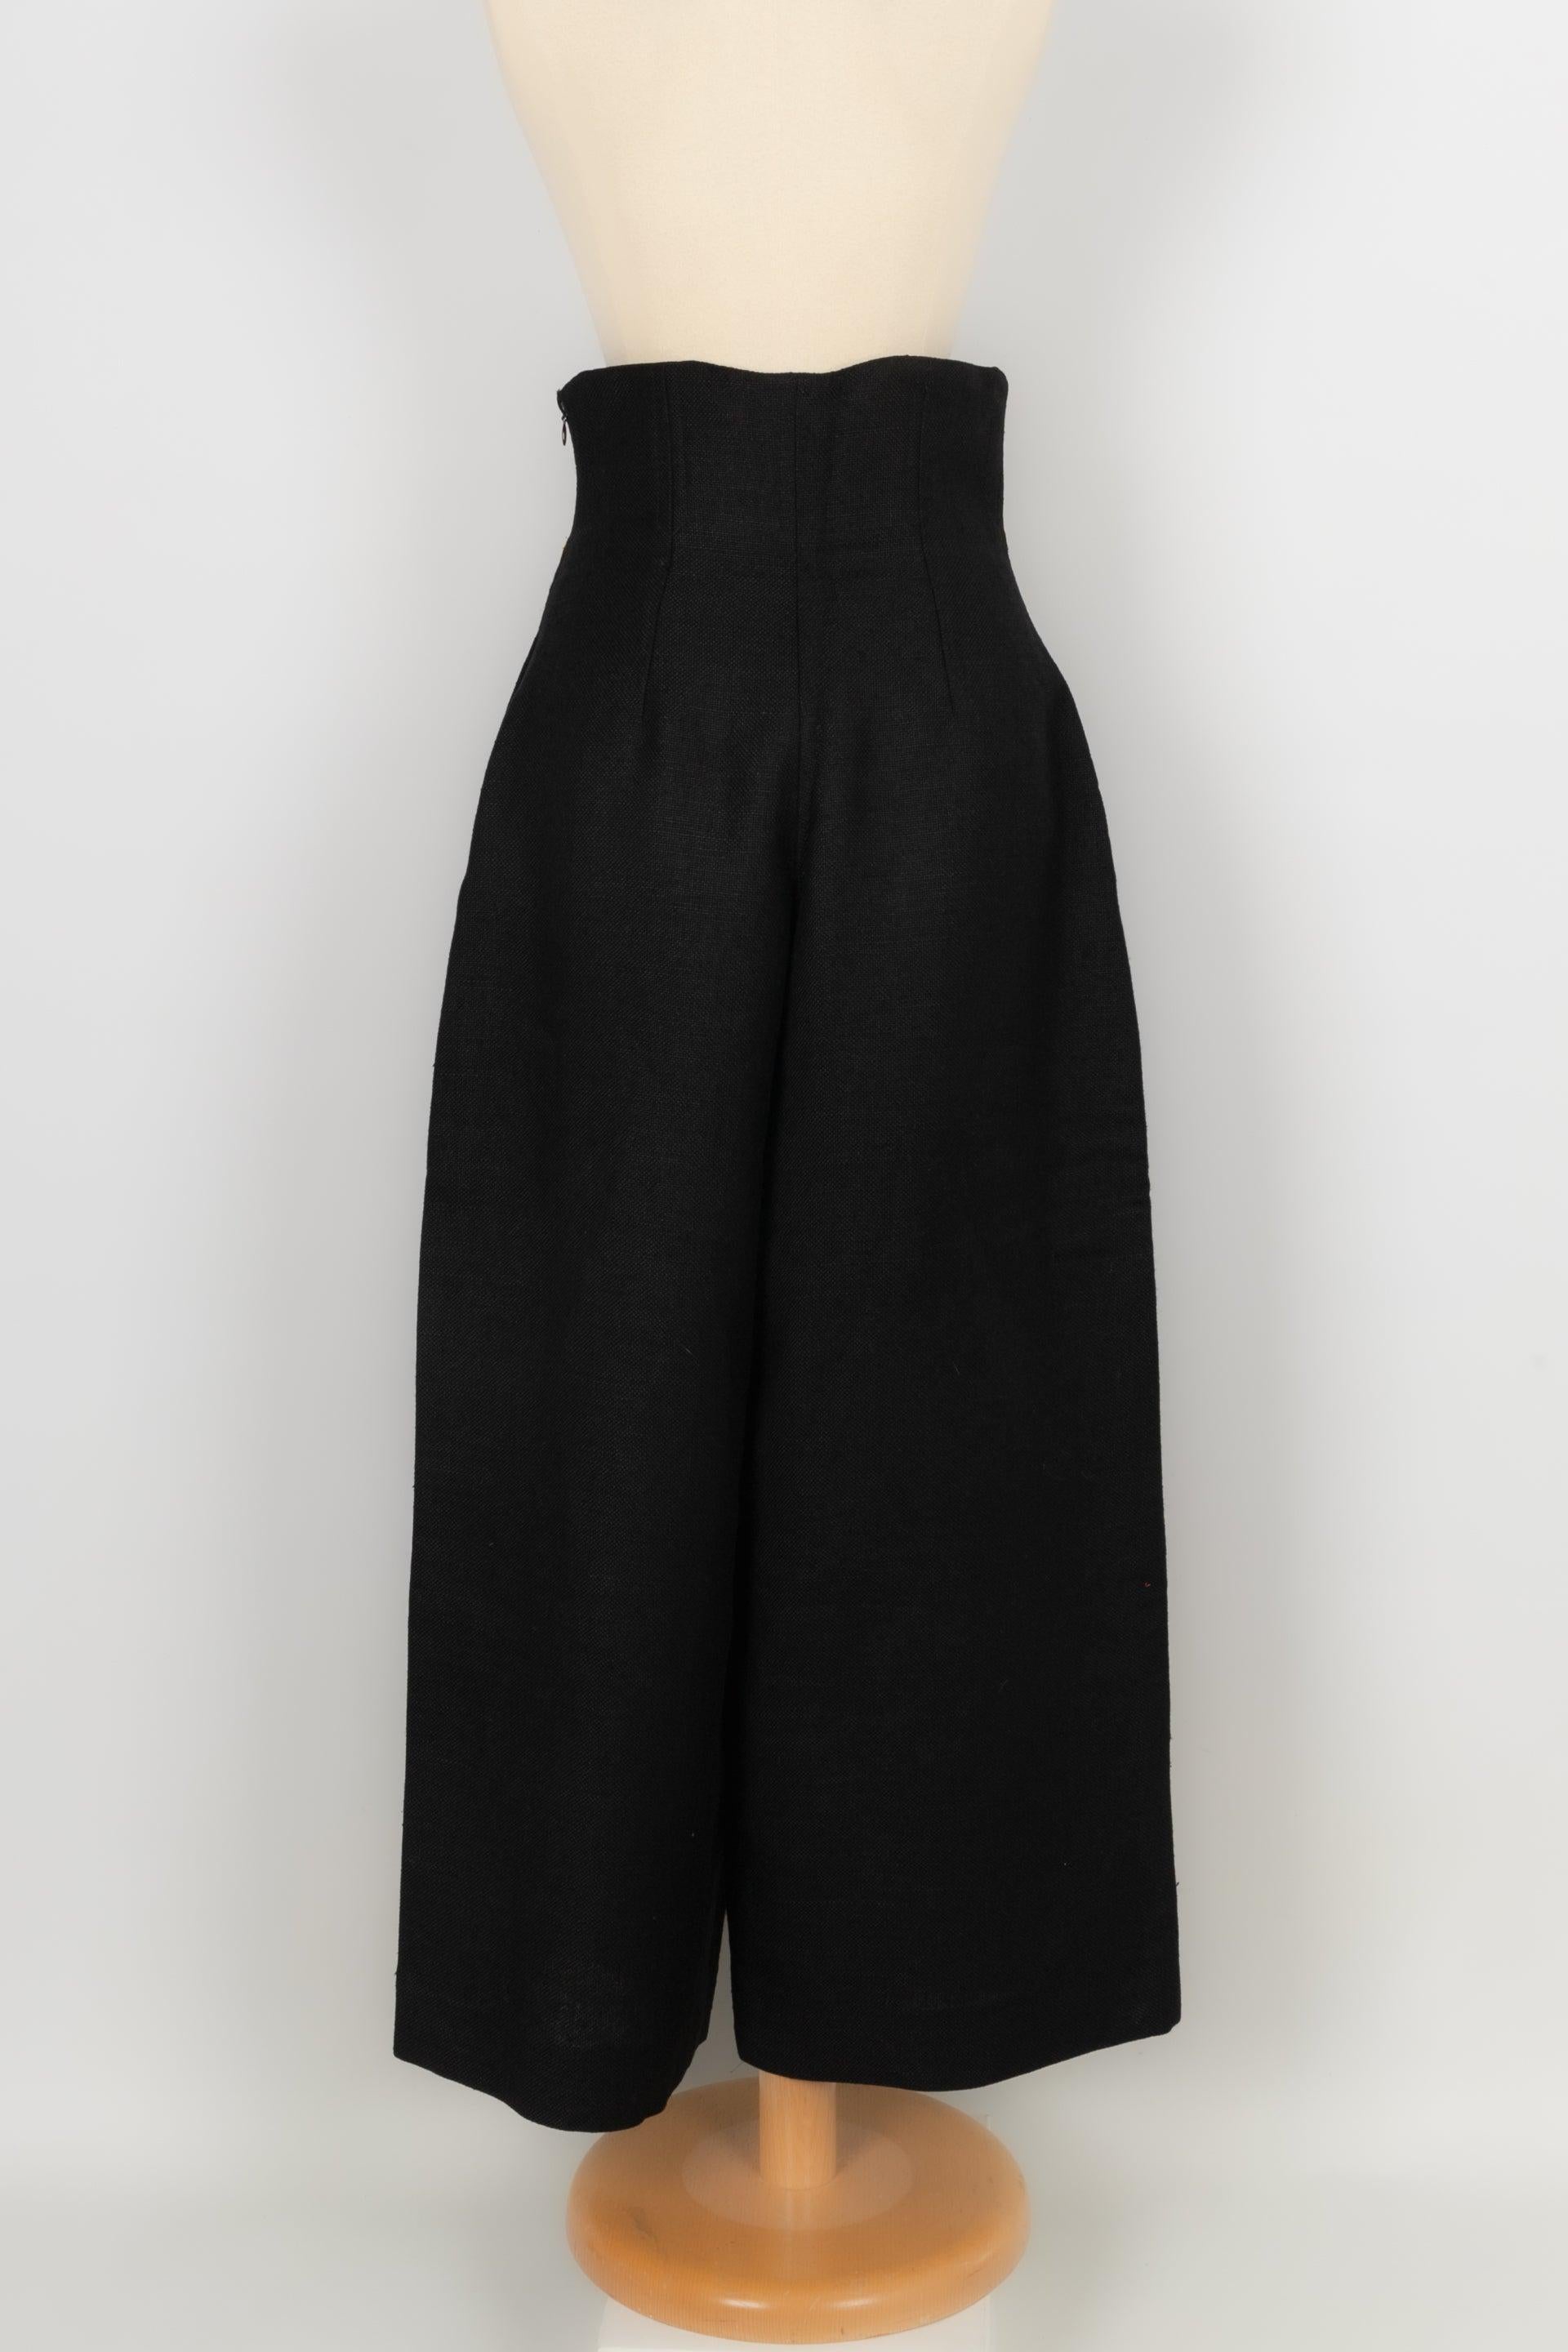 Christian Lacroix Black Linen Pants, 1993 In Excellent Condition For Sale In SAINT-OUEN-SUR-SEINE, FR